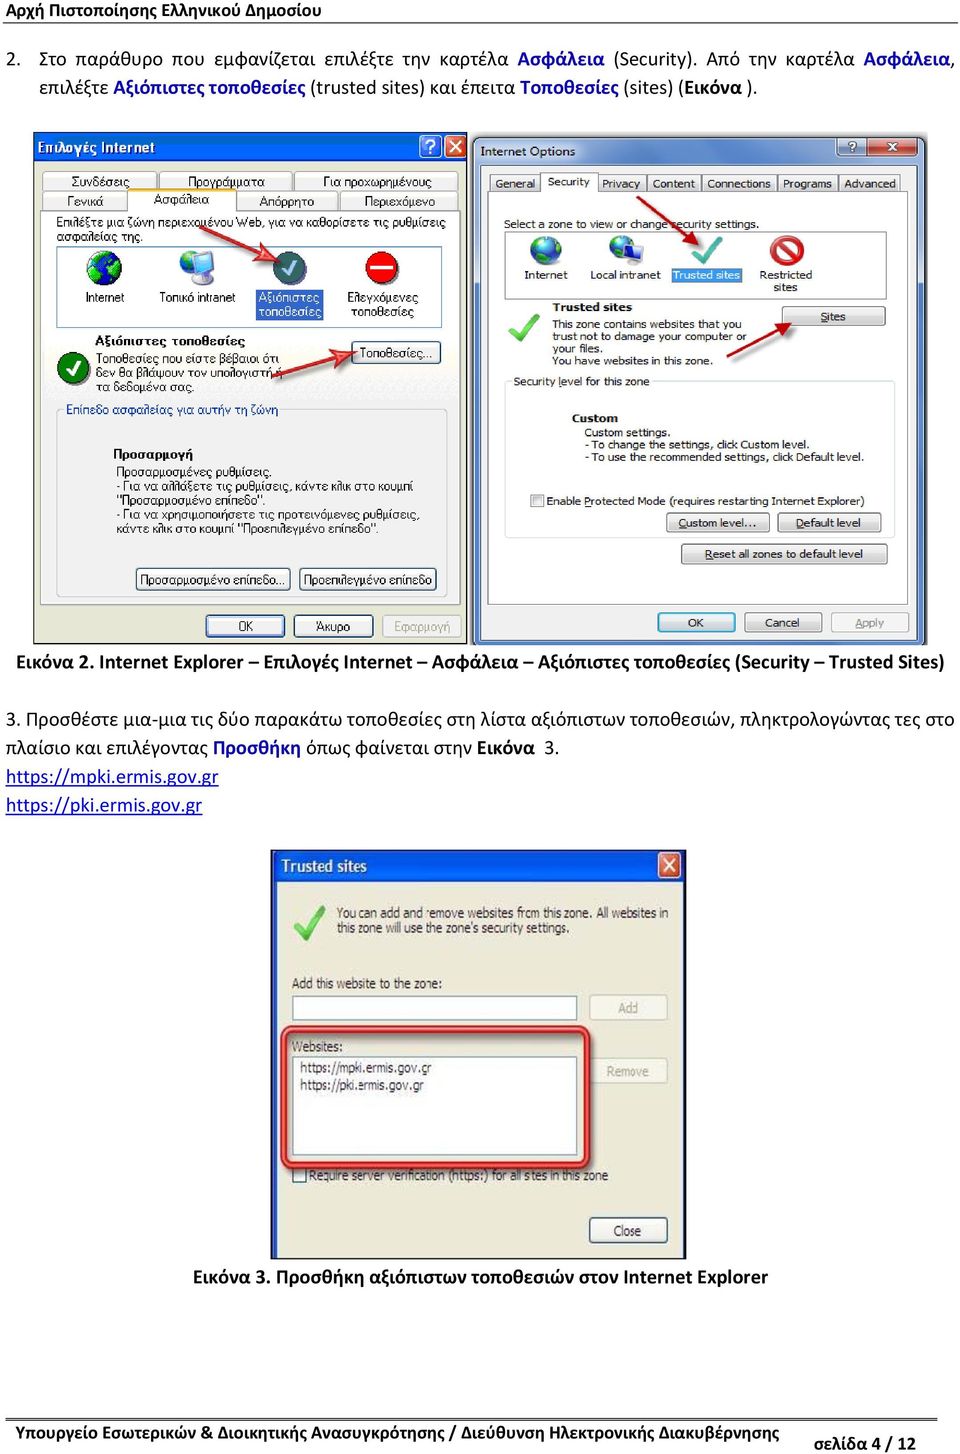 Internet Explorer Επιλογές Internet Ασφάλεια Αξιόπιστες τοποθεσίες (Security Trusted Sites) 3.